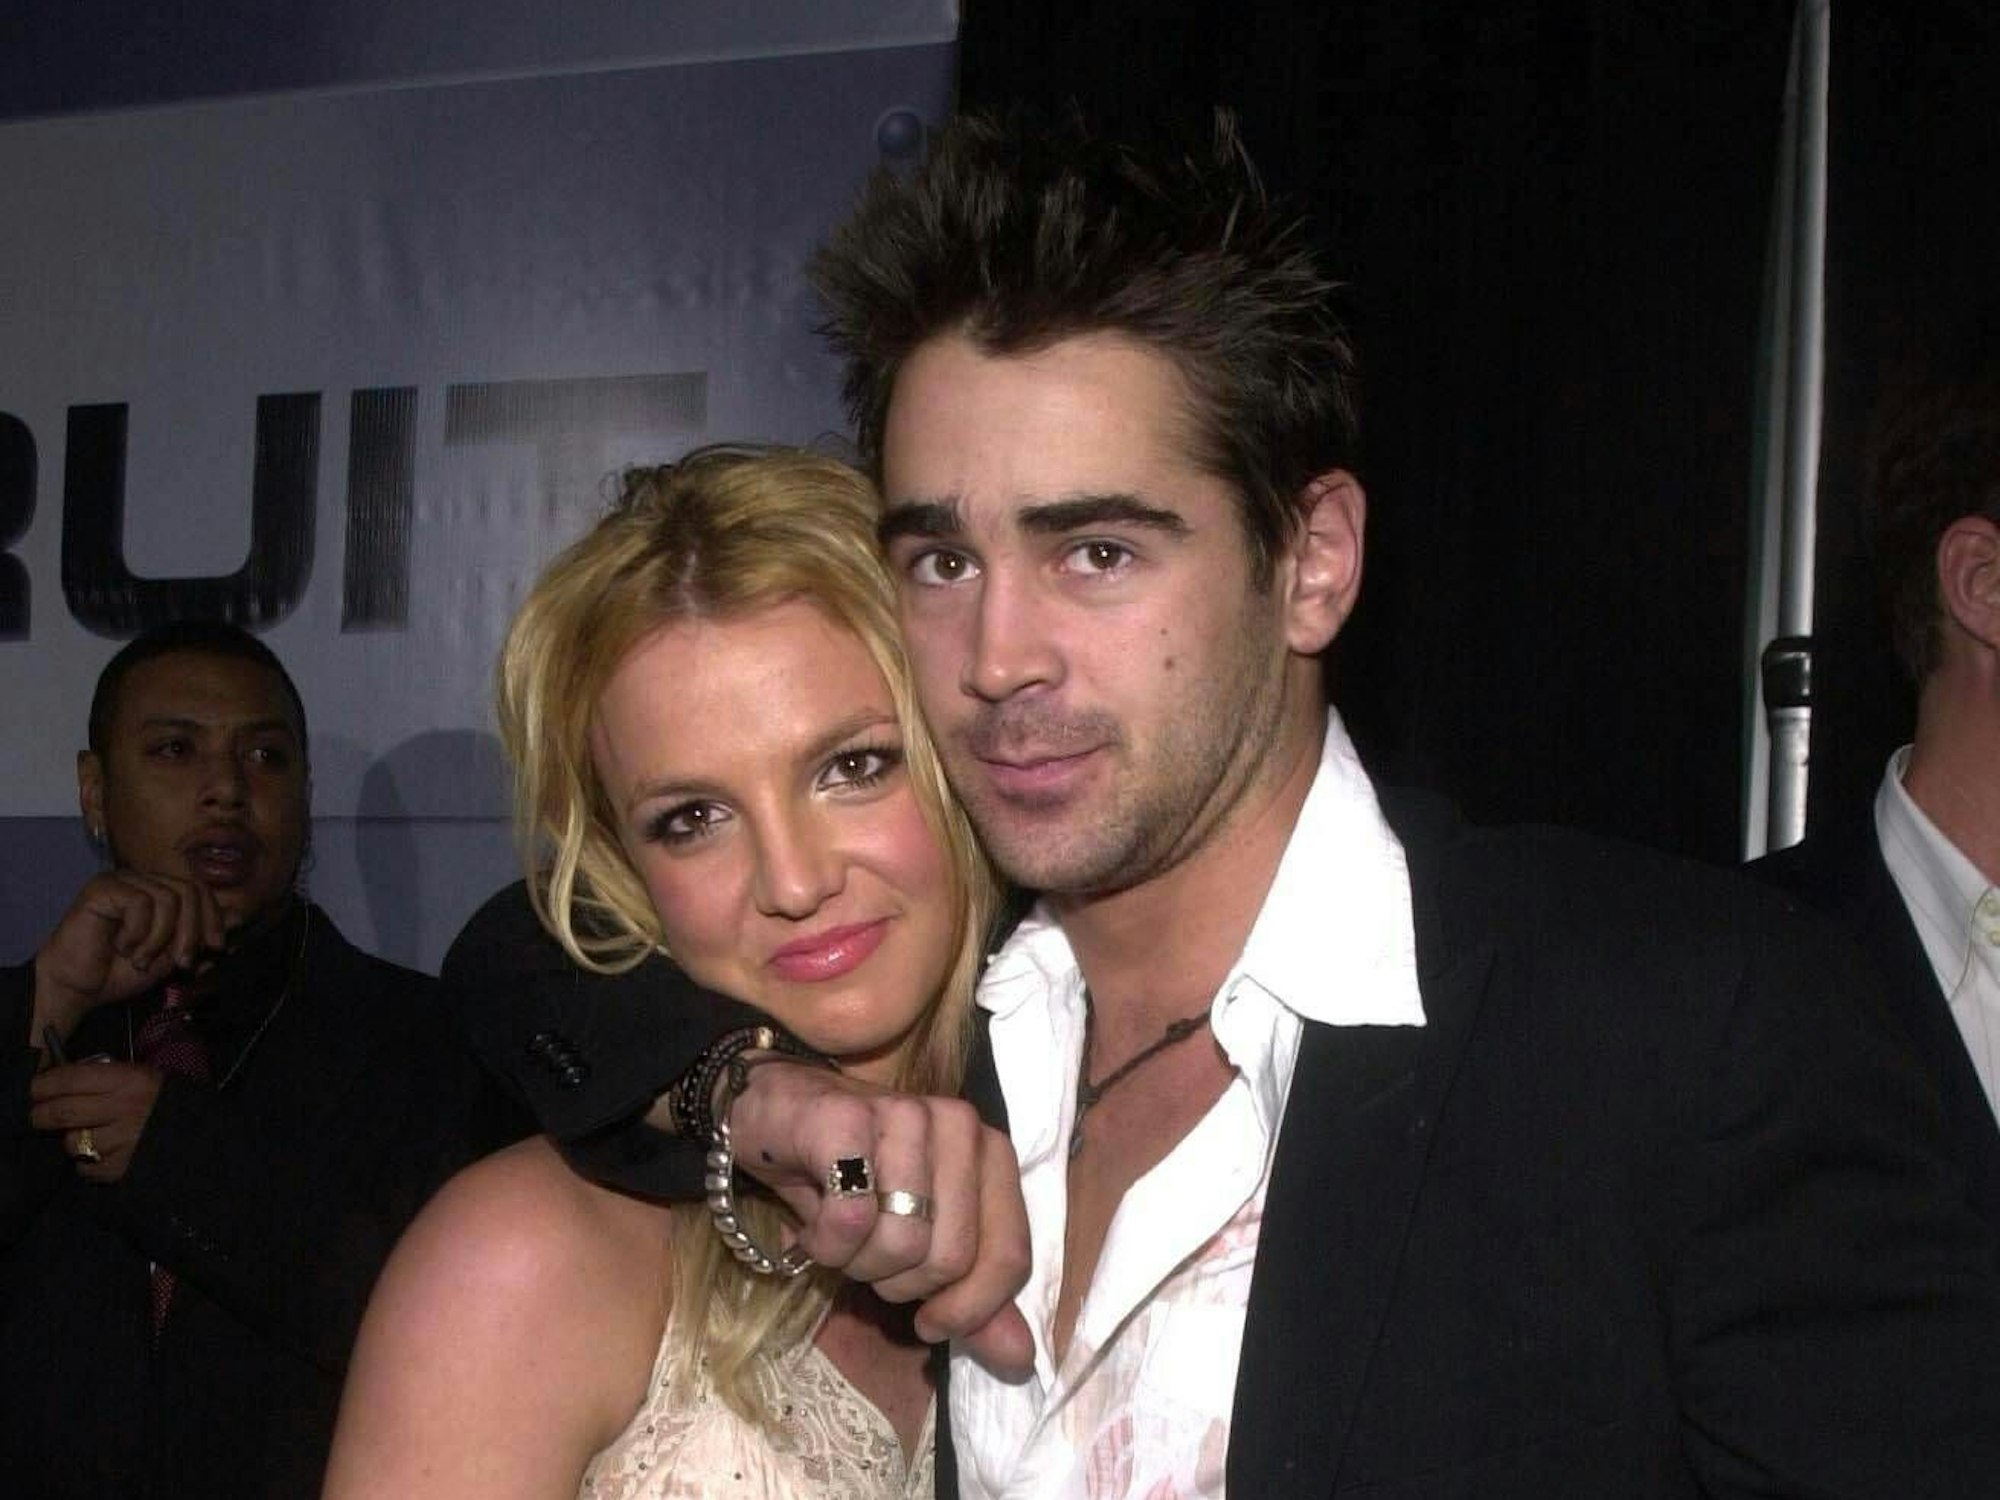 Das Foto zeigt Popstar Britney Spearsund Schauspieler Colin Farrell bei der Premiere des Actionfilms „Der Einsatz“ in einem Kino in Hollywood. Er hat den Arm um sie gelegt und beide lächeln in die Kamera.